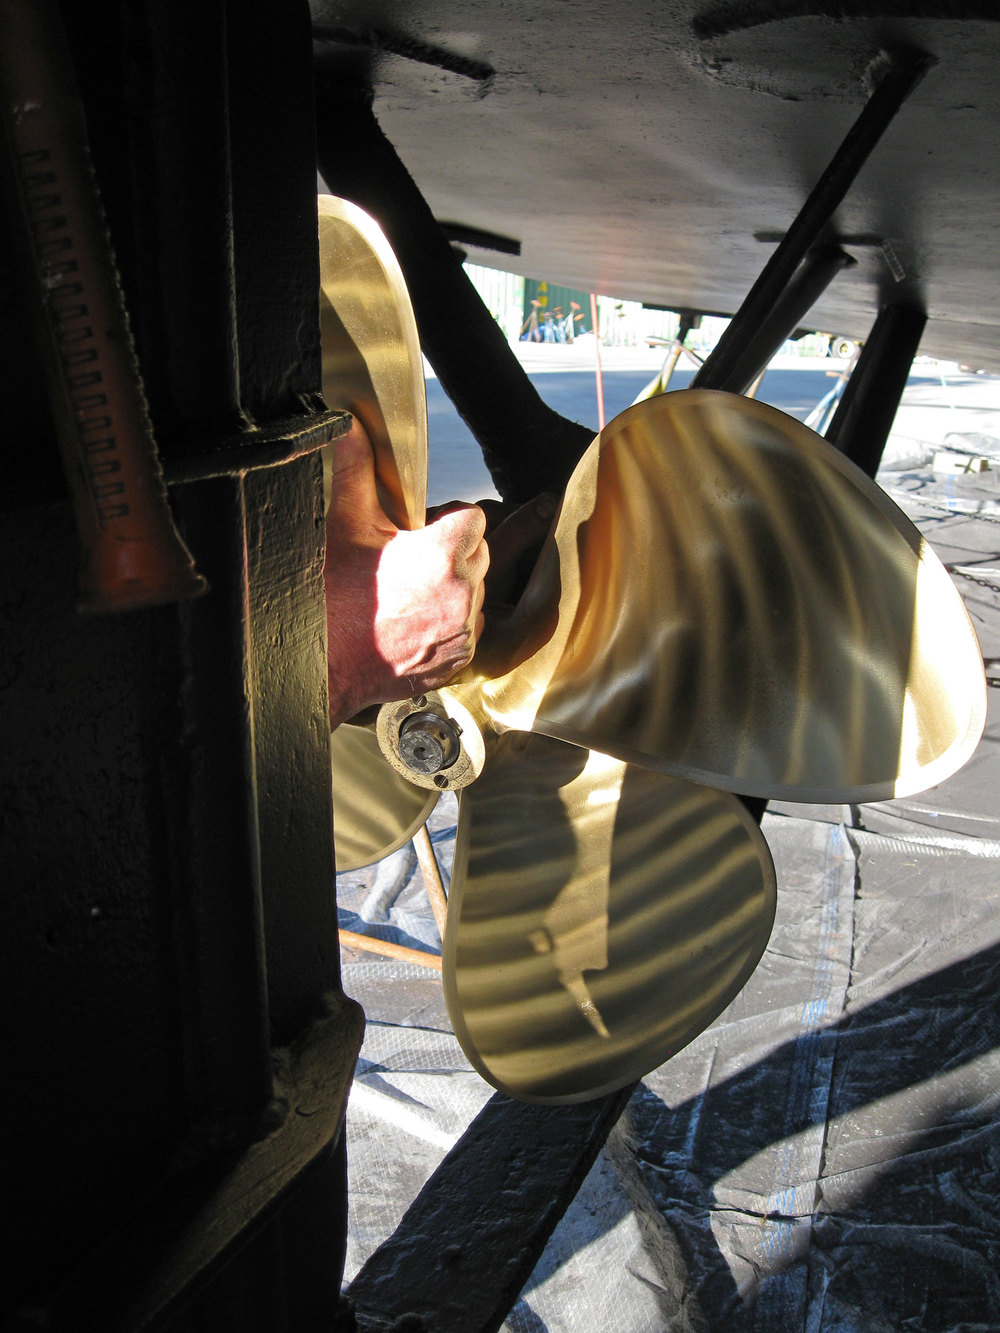 Sliding the keyed boat propeller onto the shaft